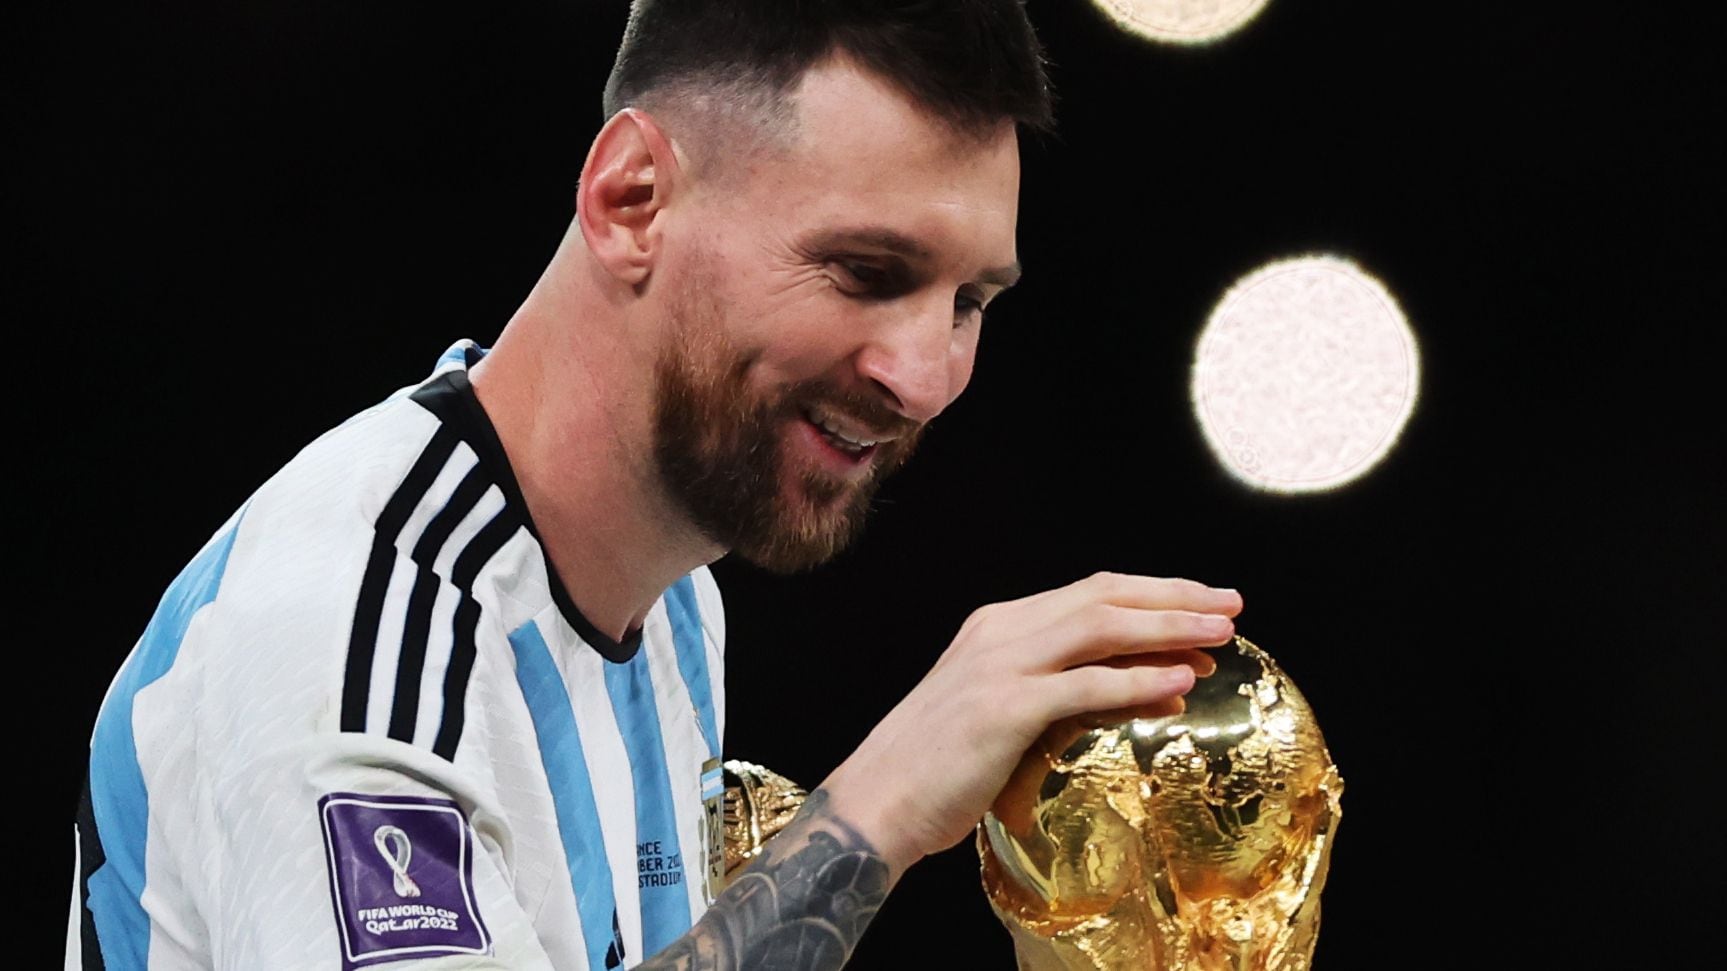 “La Argentina de Lionel Messi campeona, el acto de justicia más fabuloso”, así elogia la prensa de Europa la consagración del astro albiceleste